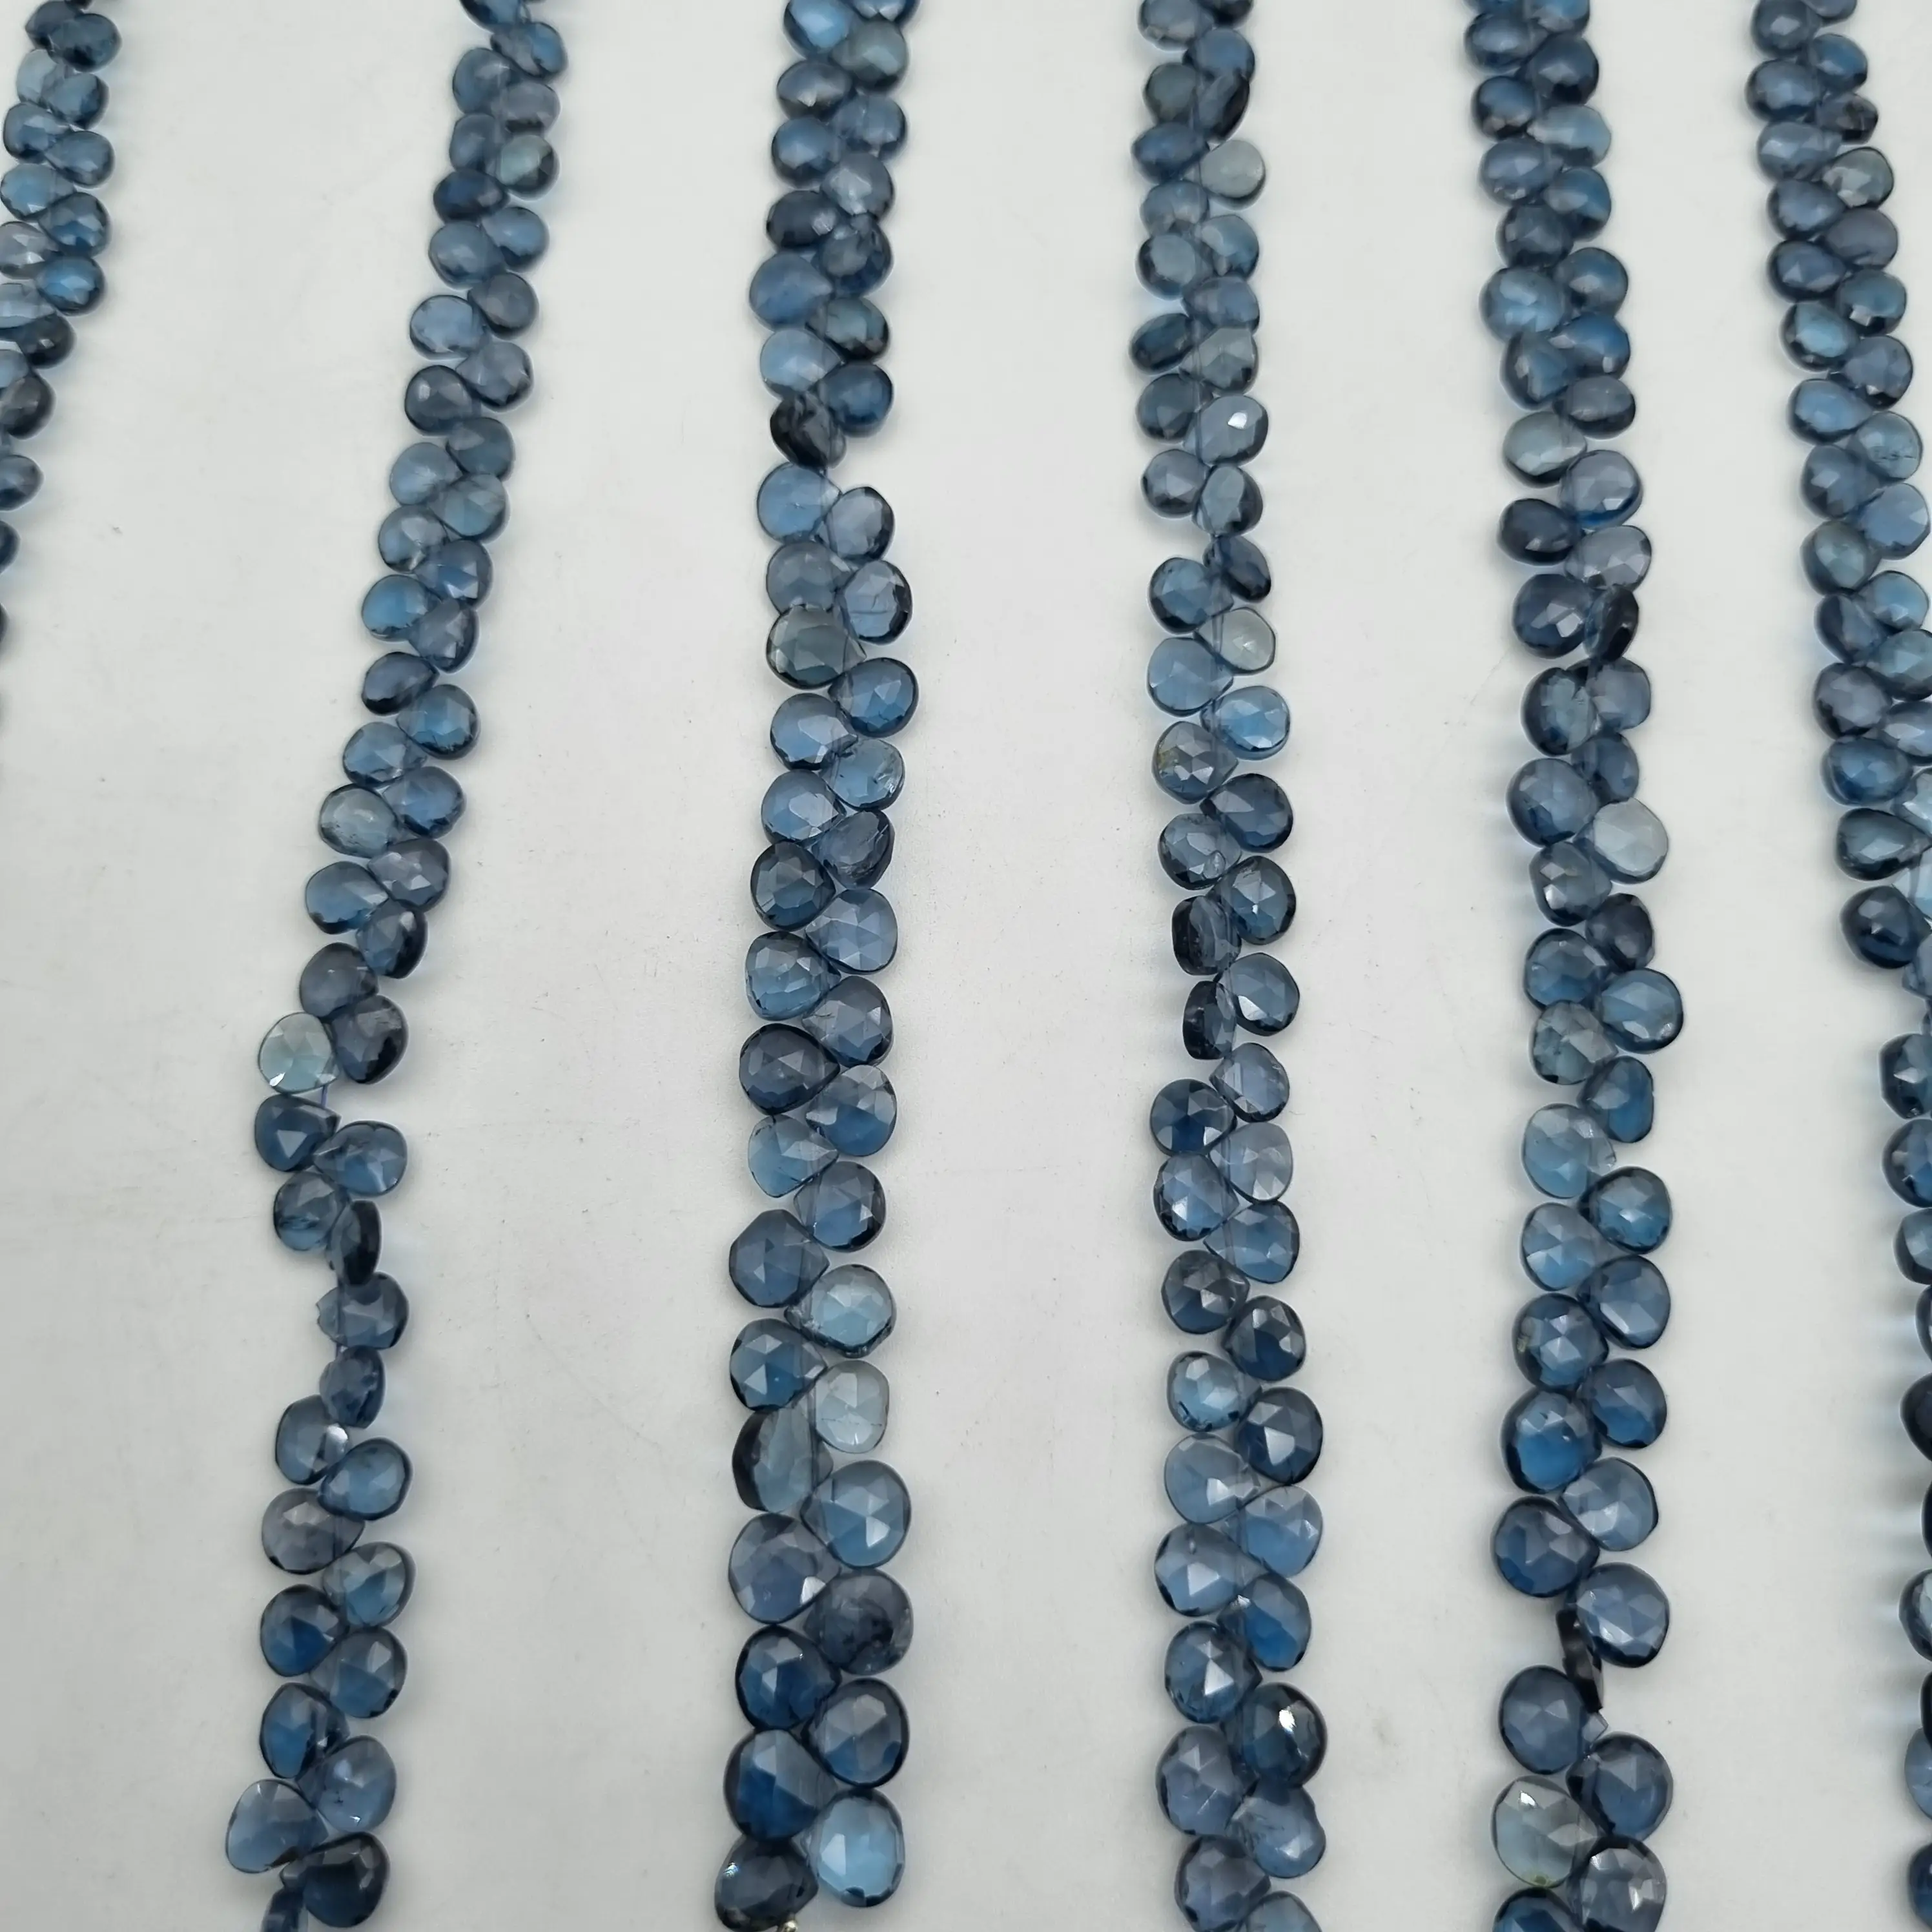 Natural London Blue Topaz Faceted Heart Cut Beads Dalam Grosir untuk Perhiasan